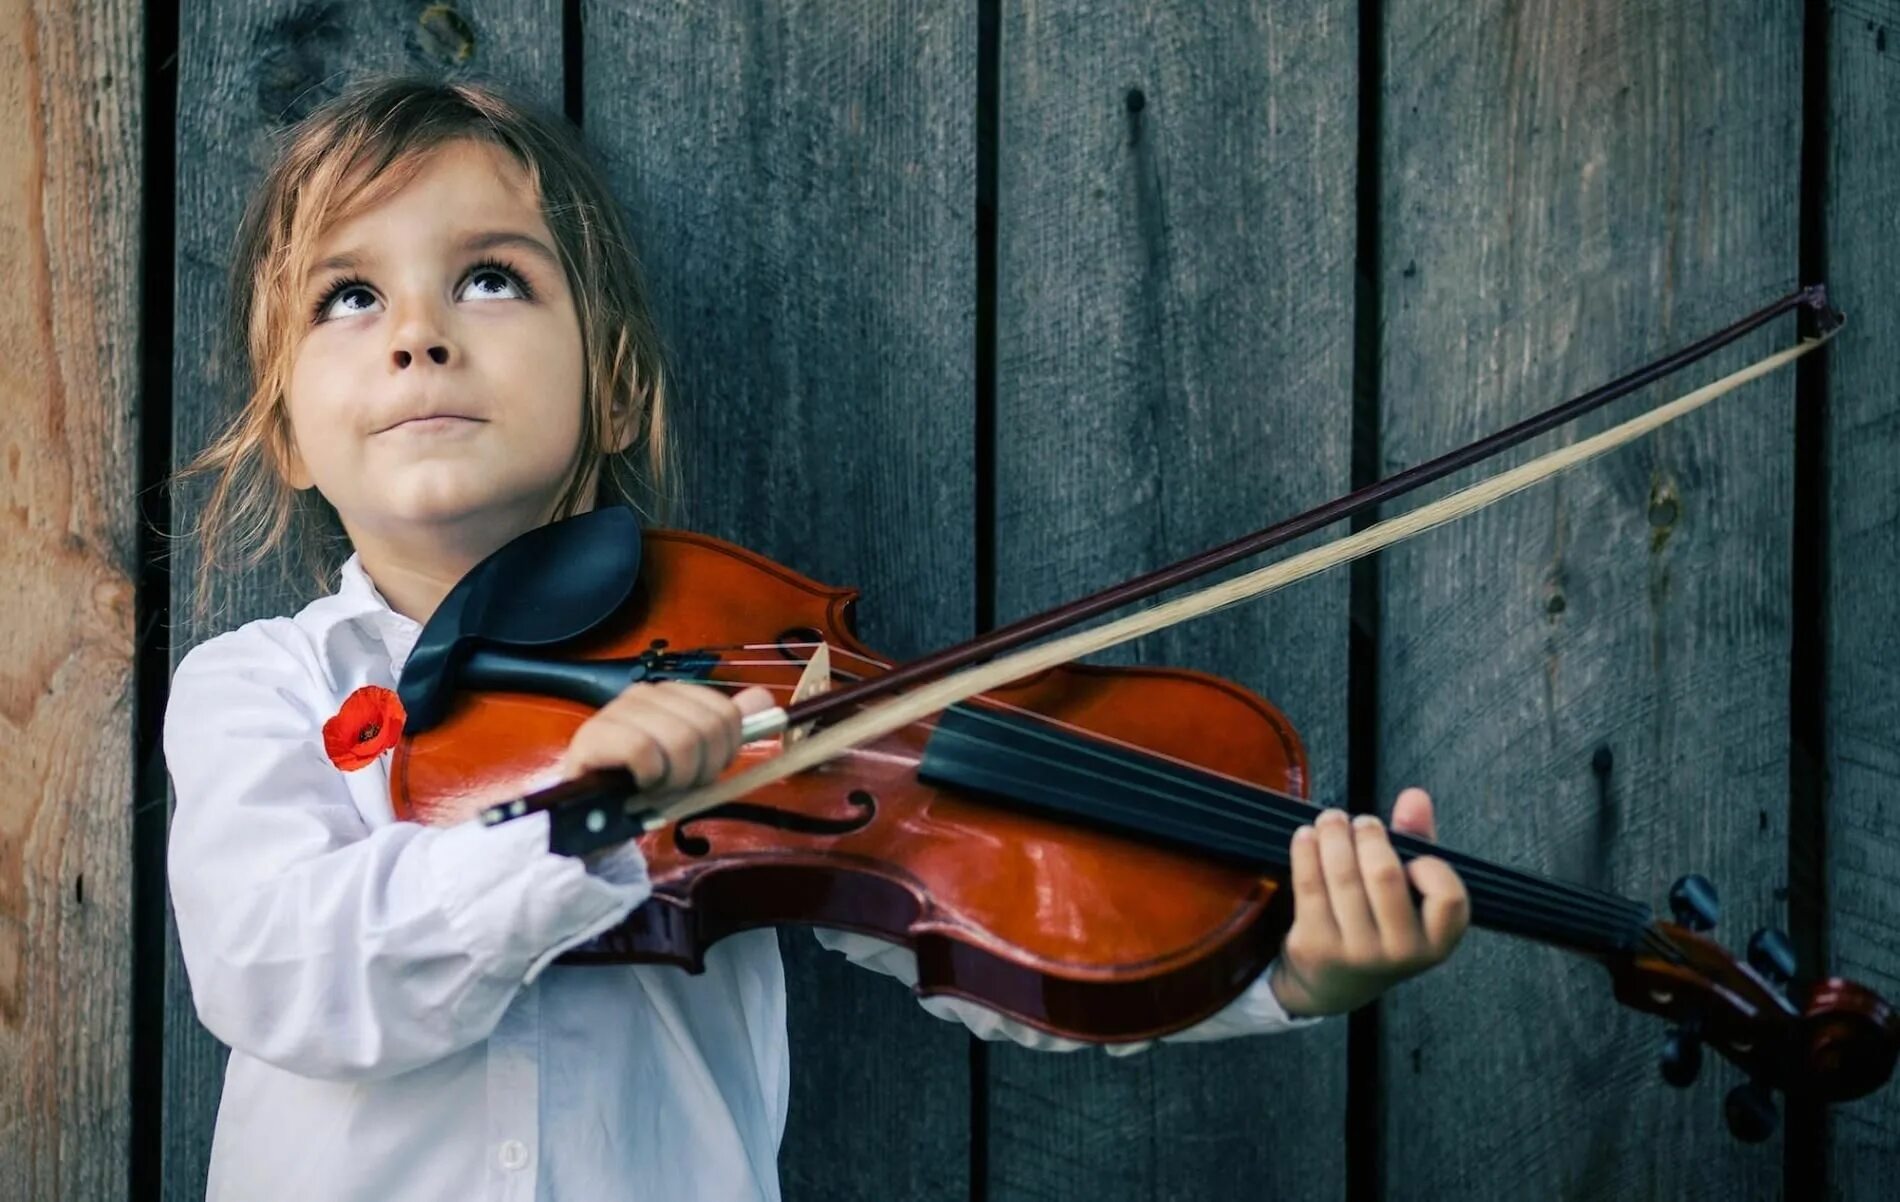 Алиса Бельская. Судзуки скрипач. Музыкальные инструменты для детей. Дети играющие на музыкальных инструментах. Играть первую скрипку это